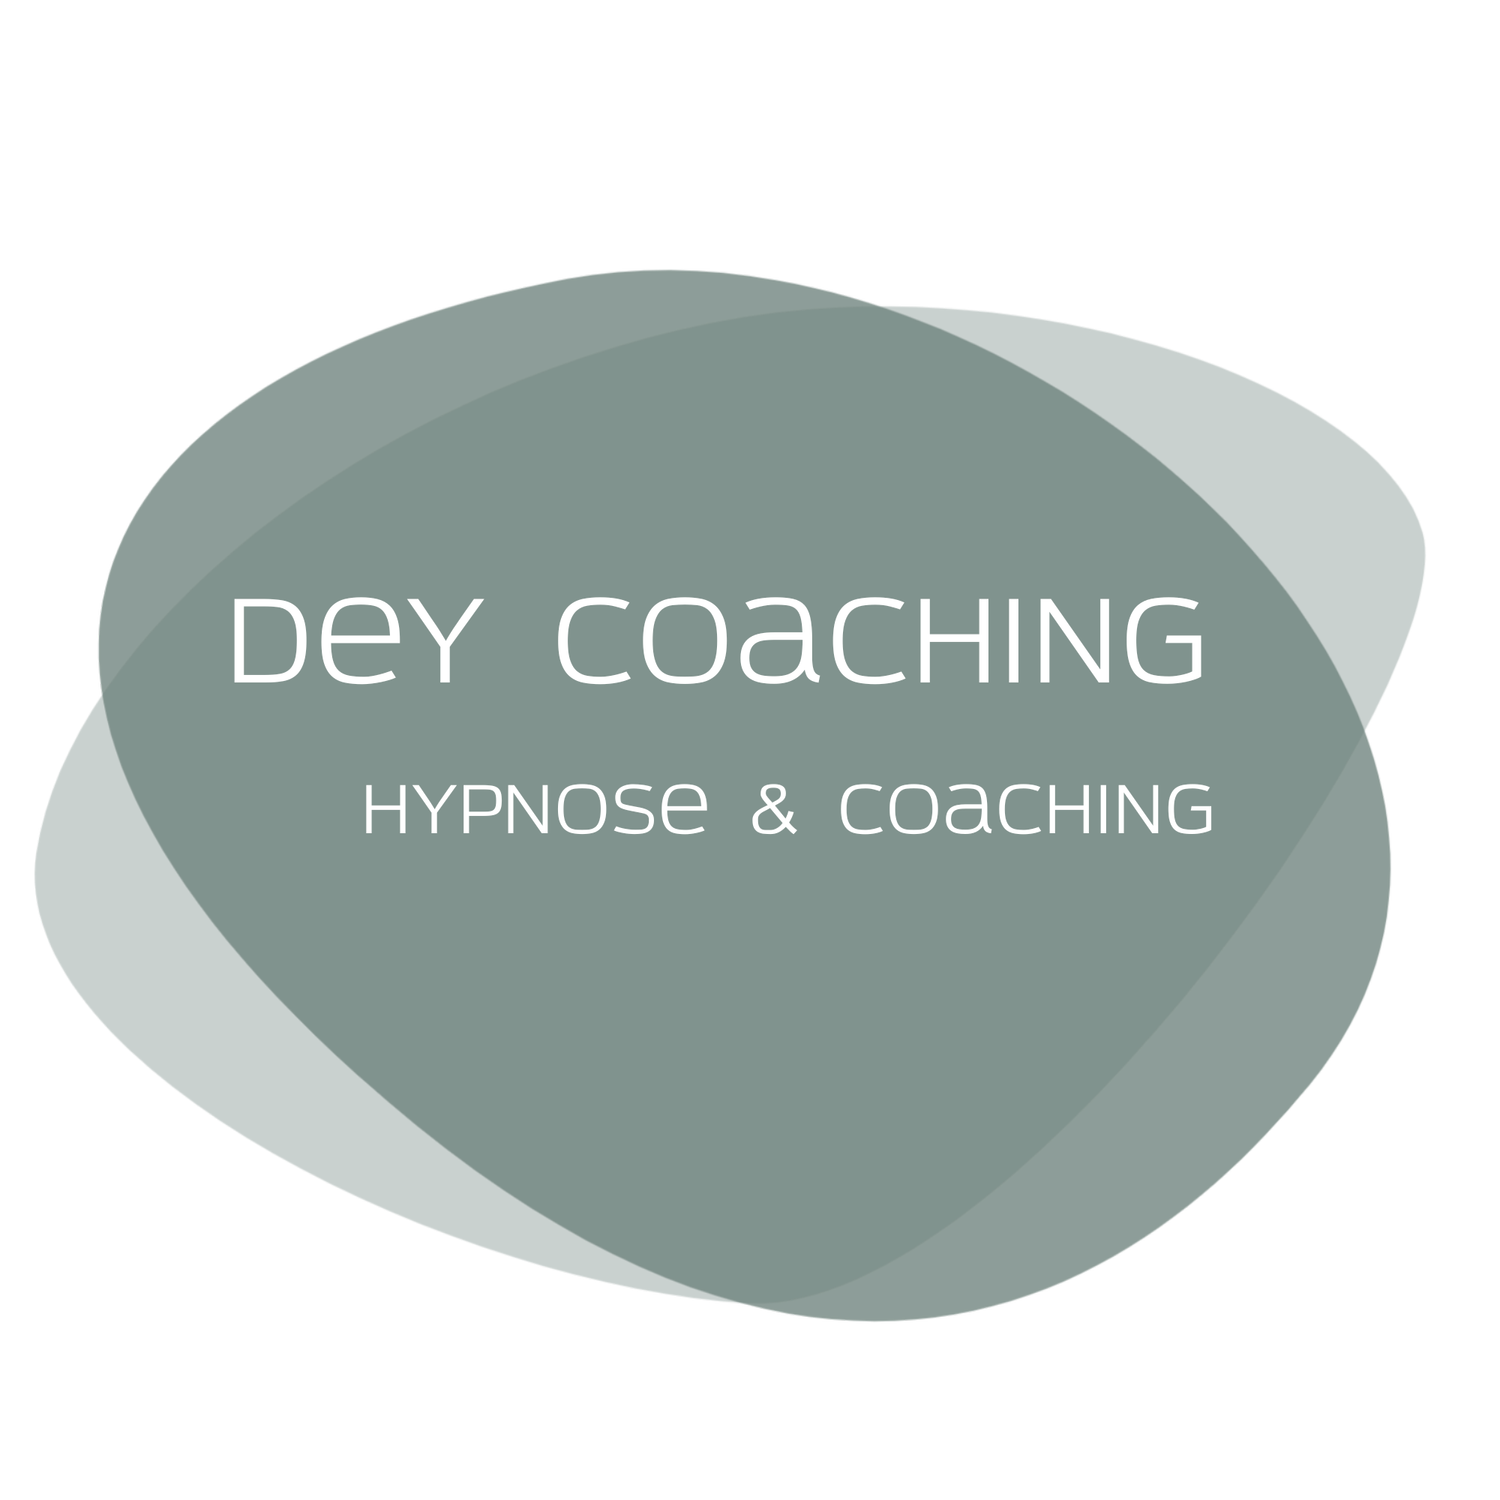 Dey Coaching